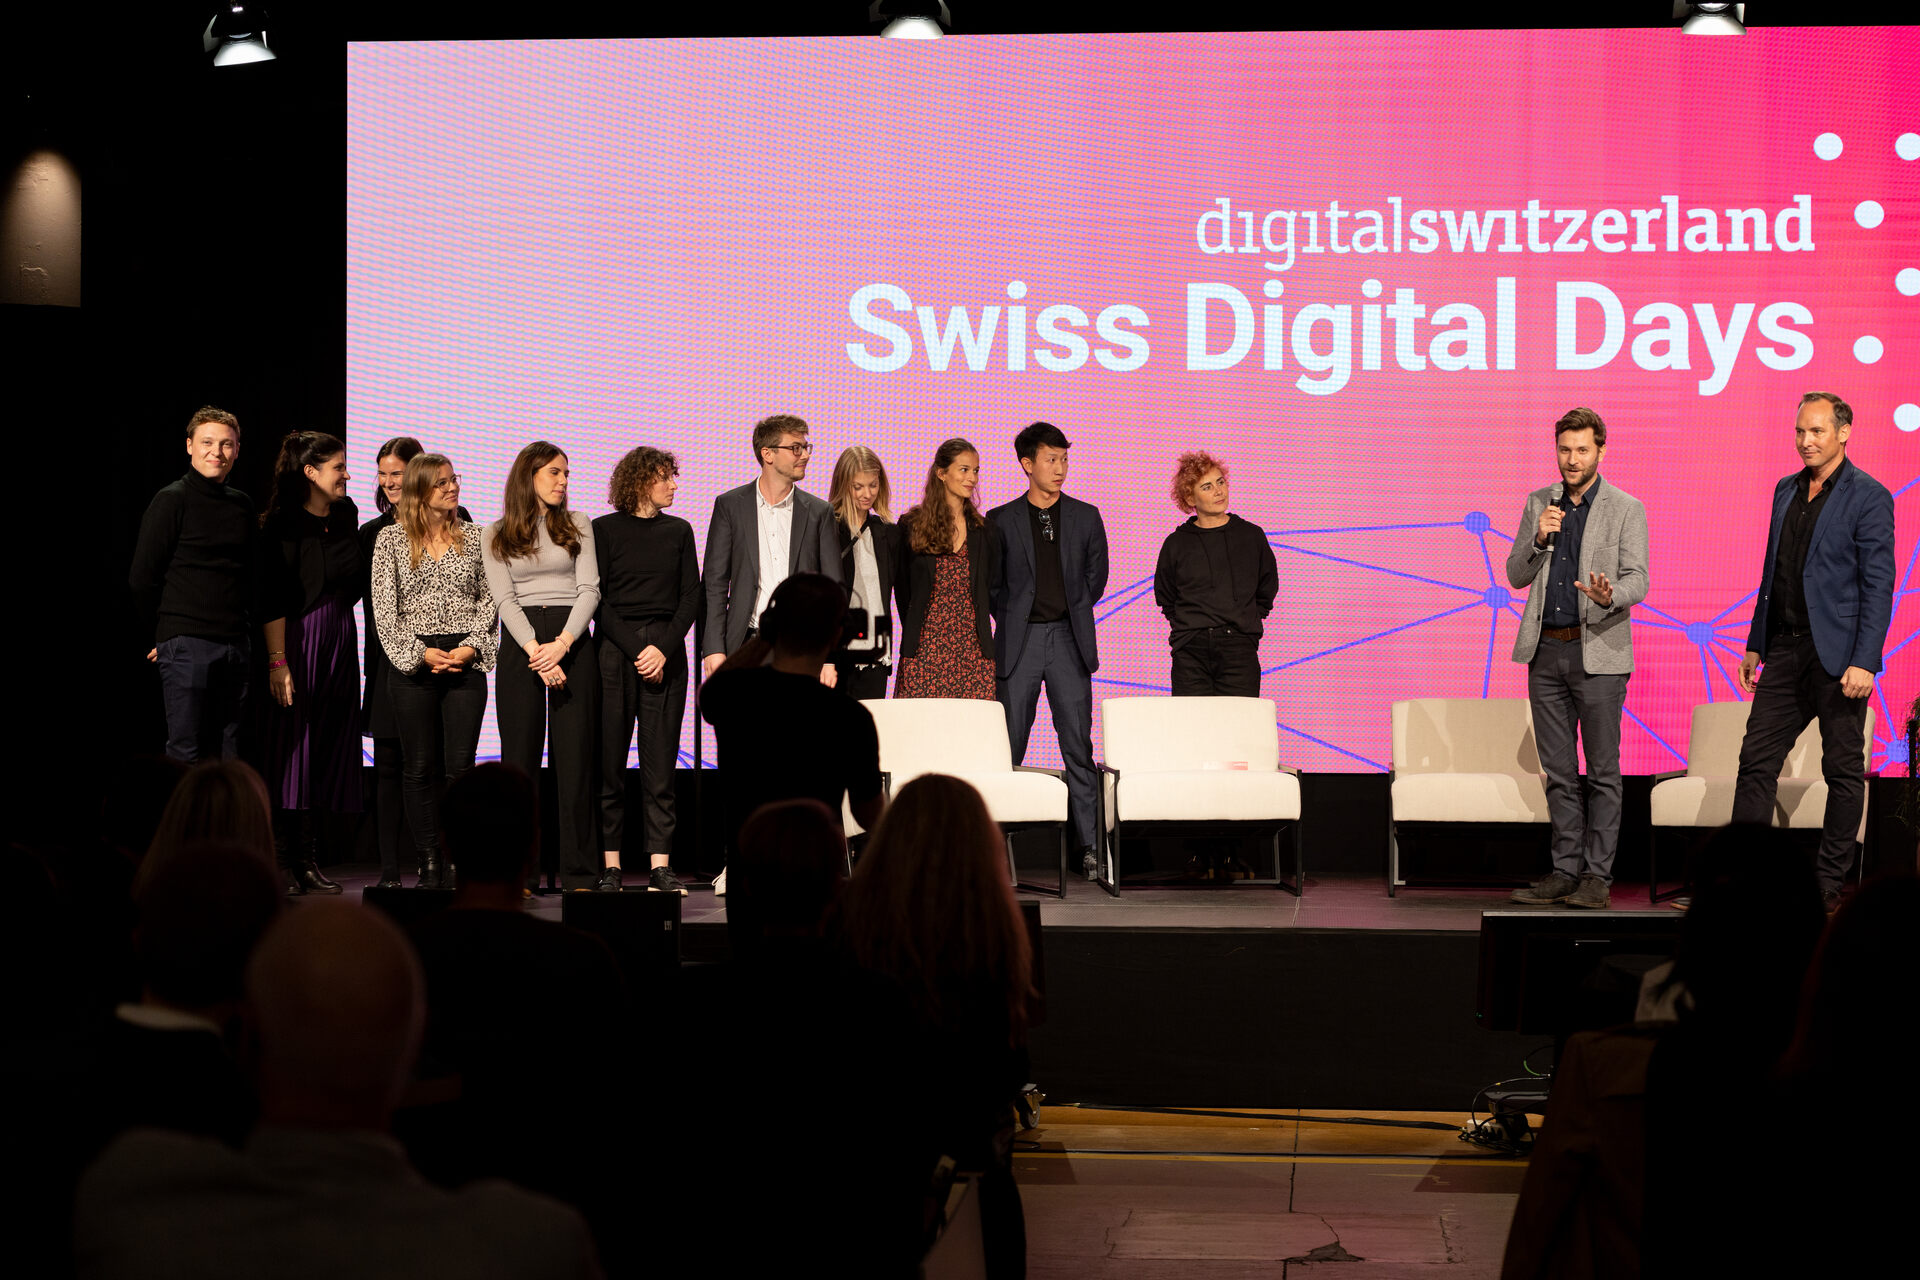 Swiss Digital Days: Die Abschlussveranstaltung der "Swiss Digital Days" 2022 im Freiruum in Zug (Zug) am 27. Oktober: das Organisationsteam von digitalswitzerland